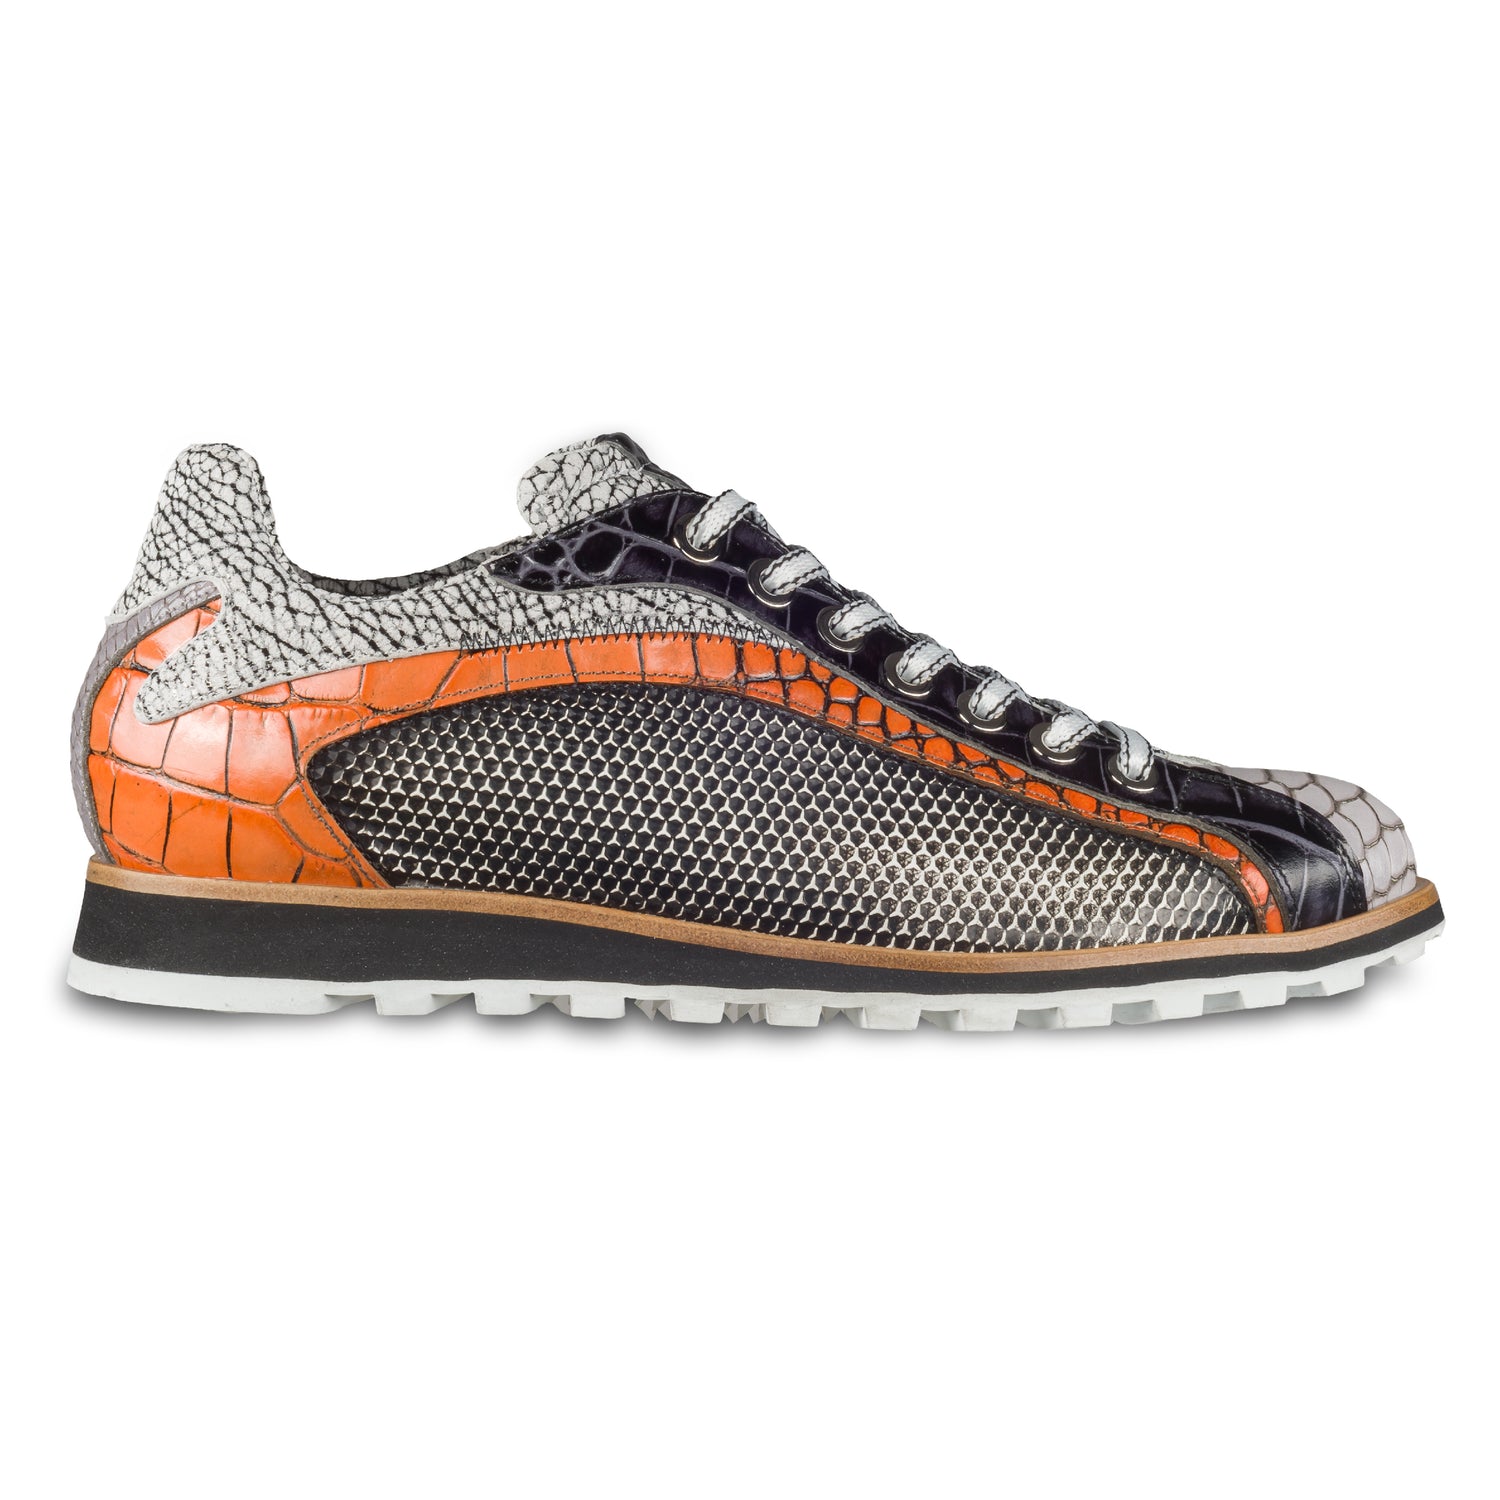 Lorenzi Herren Leder-Sneaker mit raffinierter Prägung in schwarz / weiß / orange. Handgefertigt. Seitliche Ansicht der Außenseite rechter Schuh. 